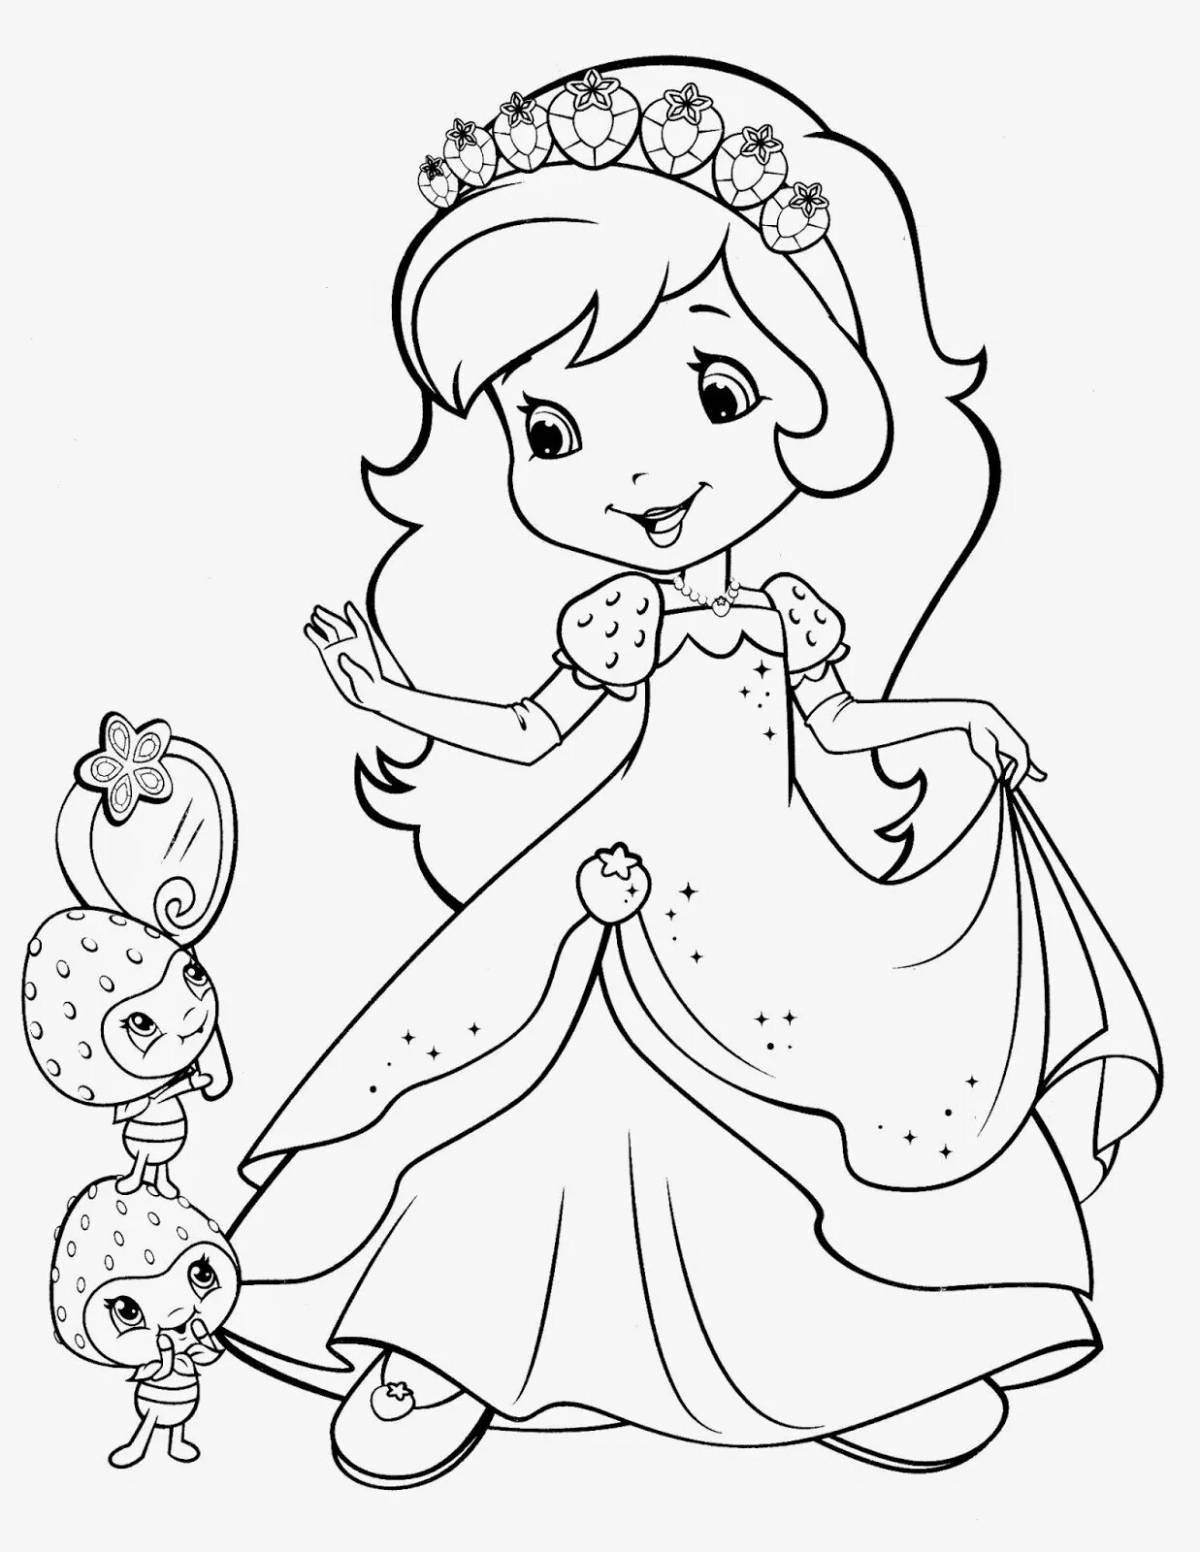 Экзотическая раскраска для девочек 6-7 лет принцесса